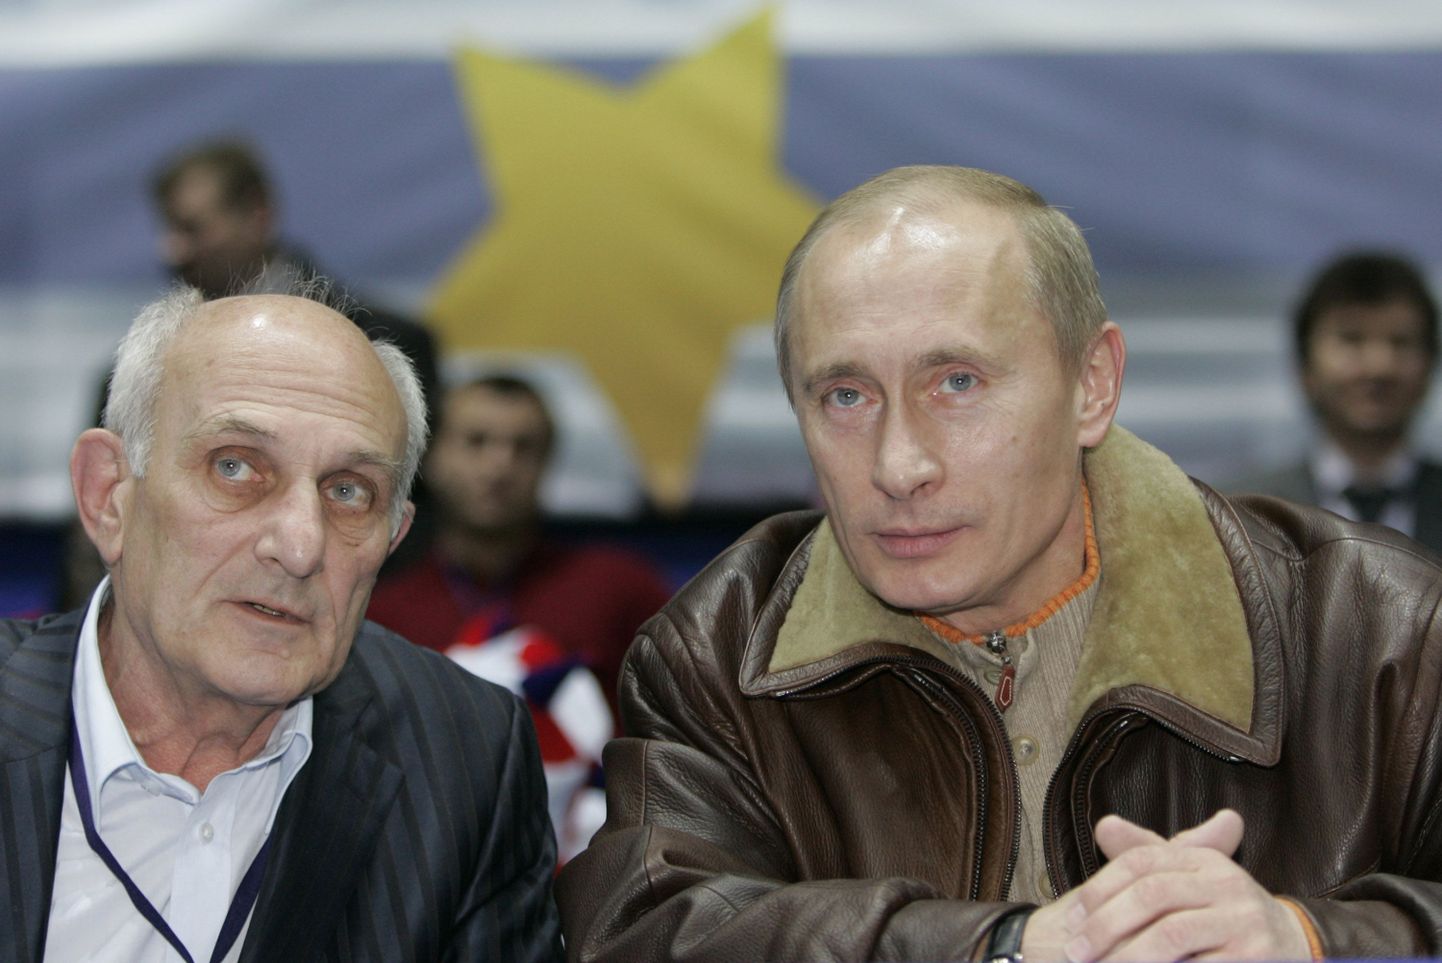 Vene president Vladimir Putin ja tema endine judotreener Anatoli Rahlin võistlusi vaatamas.